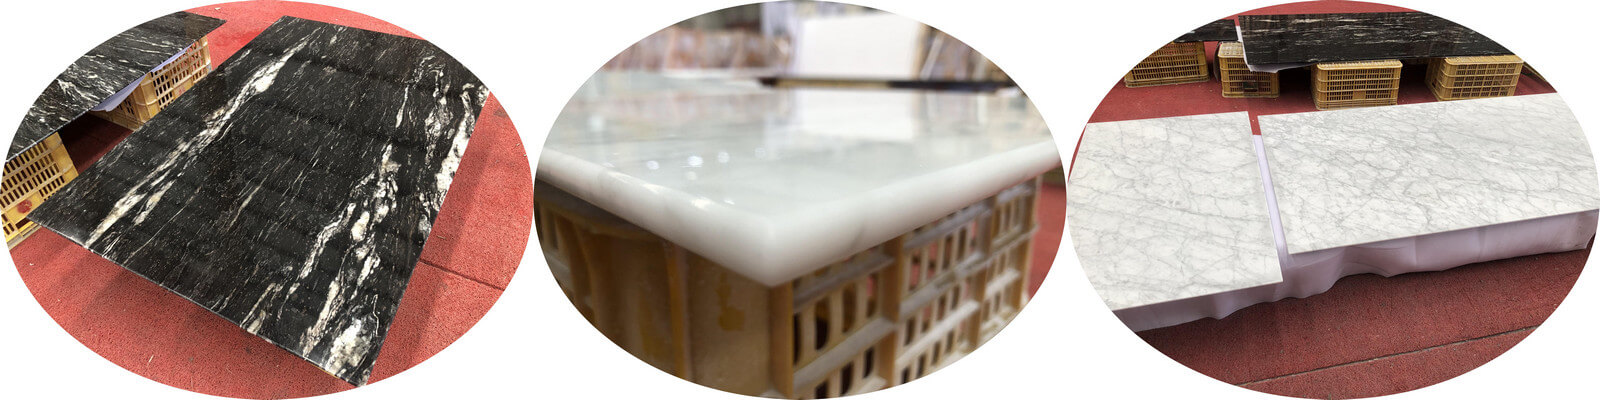 Quartz Stone, Marble & Grainte Countertops Fabrication For Hotel Condo Project 8